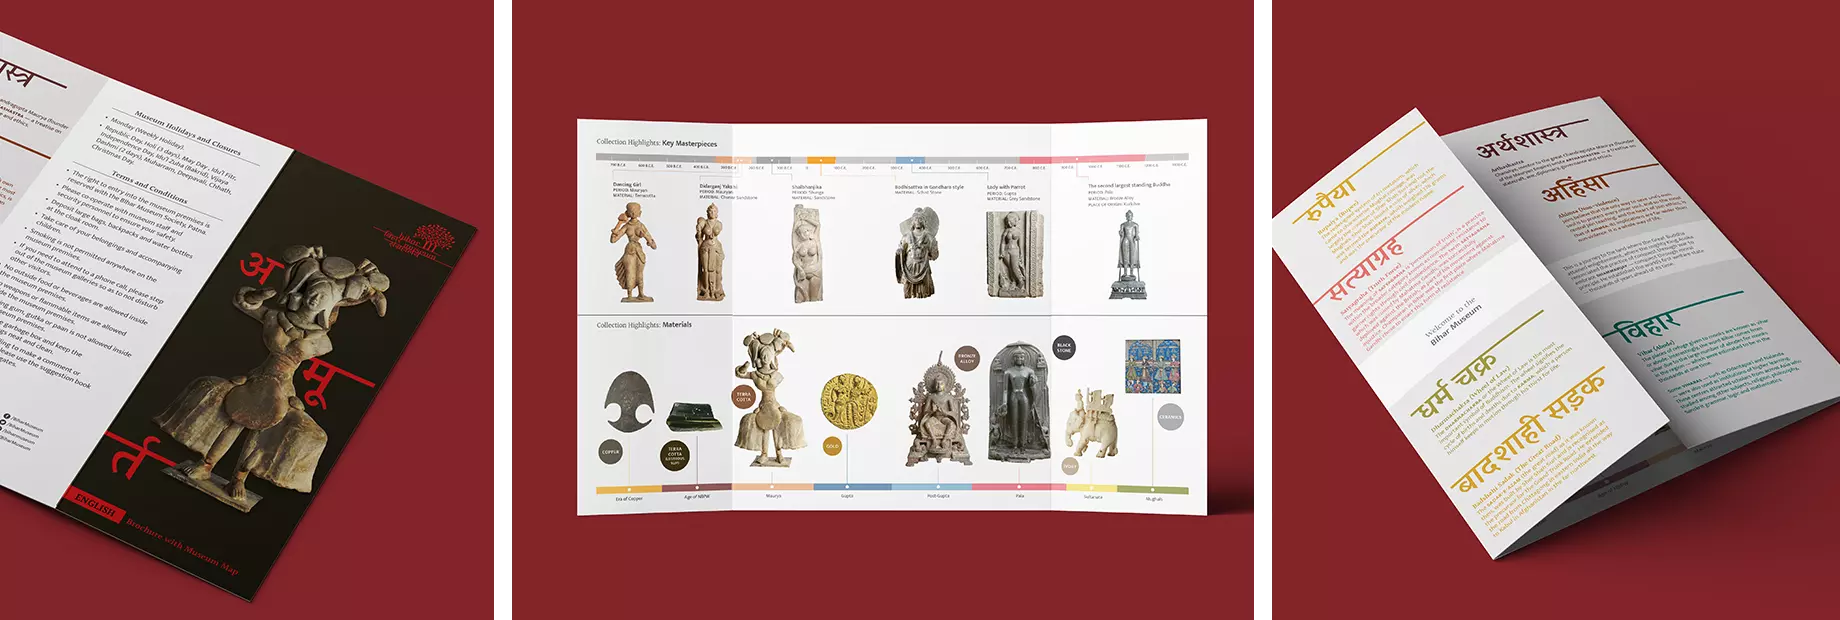 Brochure design for Bihar Museum by Lopez Design